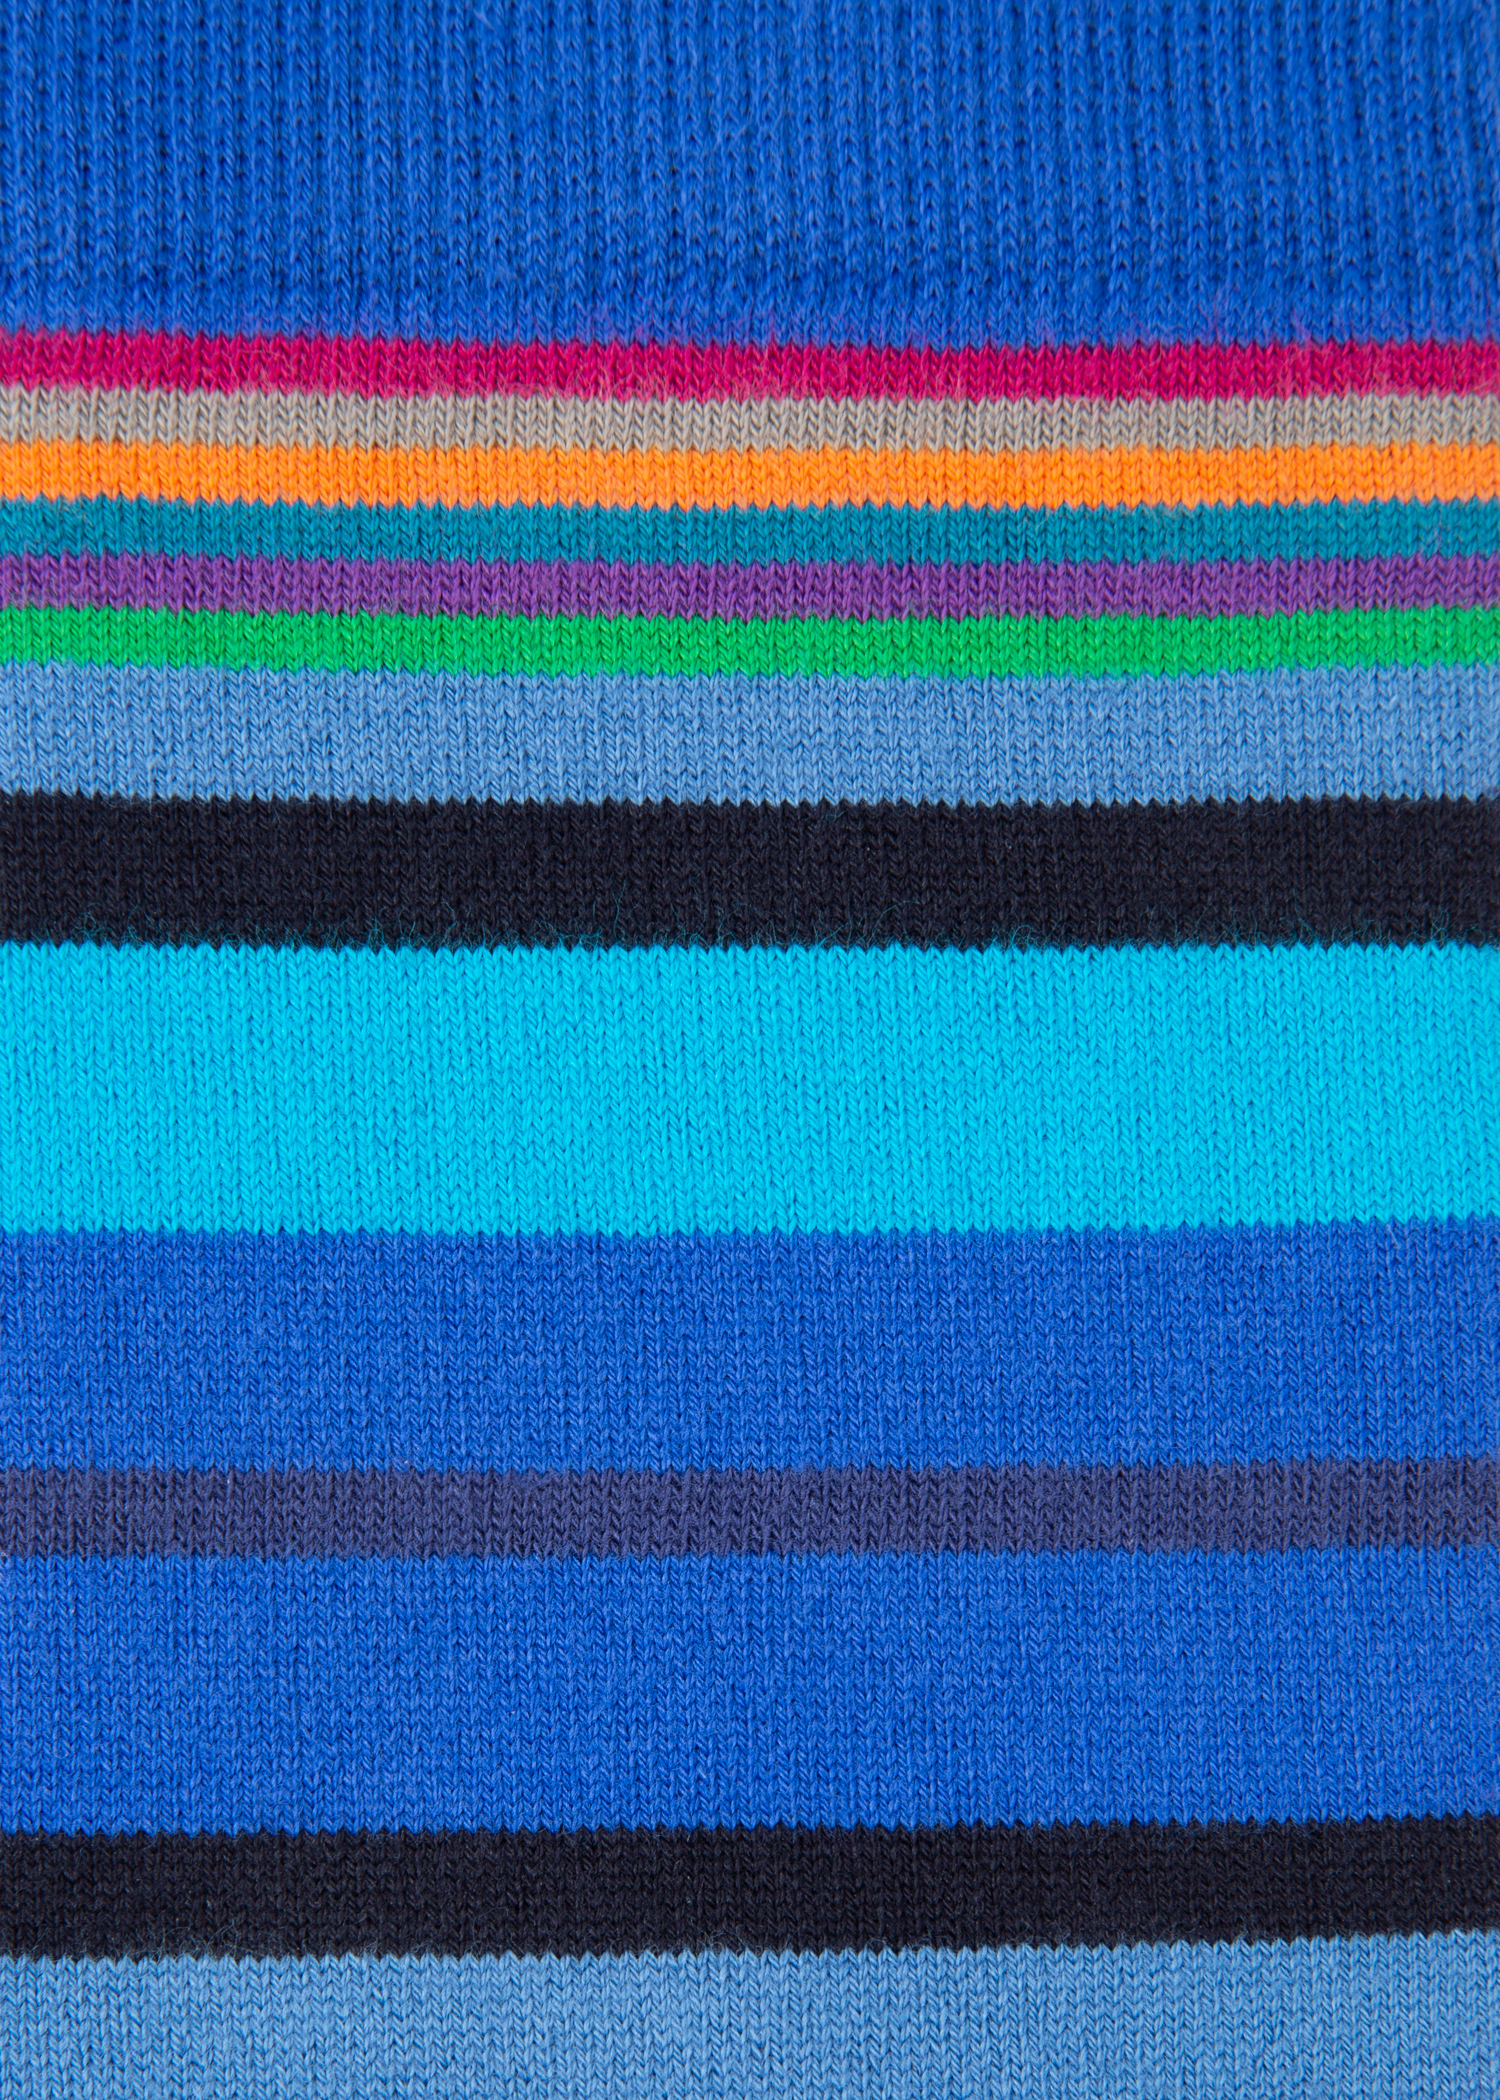 Flat view - Paul Smith For University Of Nottingham - Men's Blue Stripe Cotton Socks 